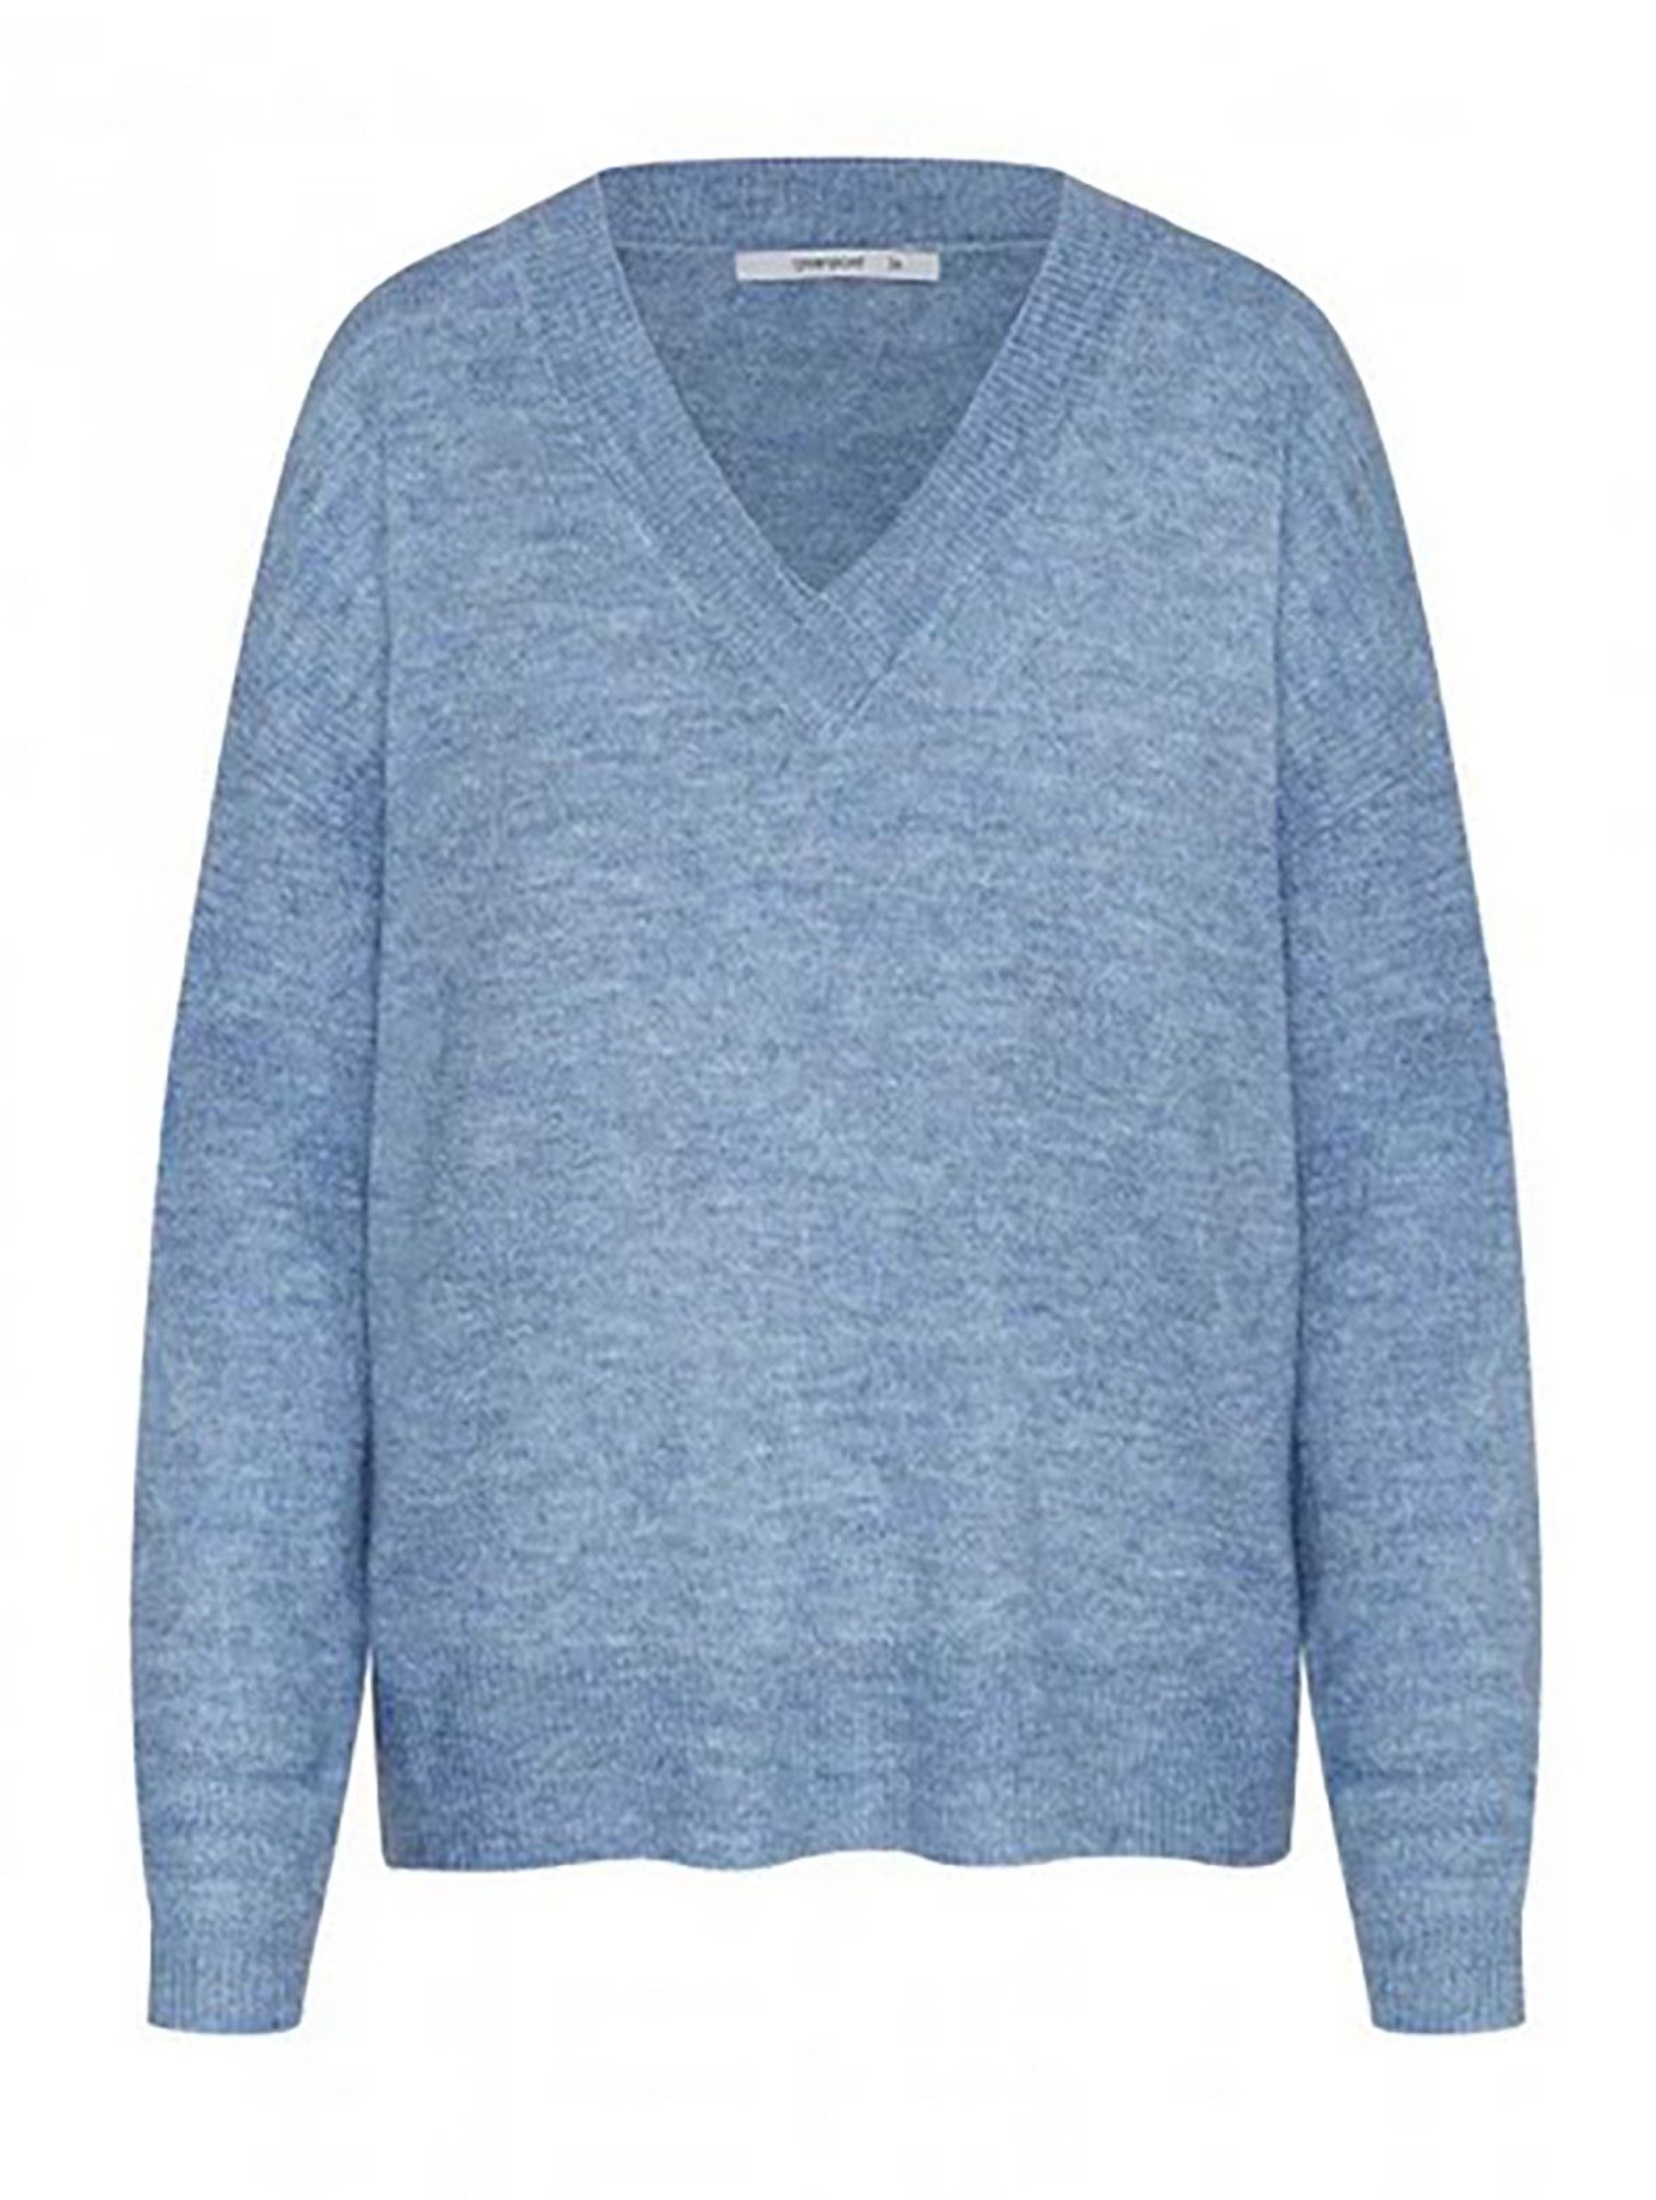 Sweter damski - niebieski